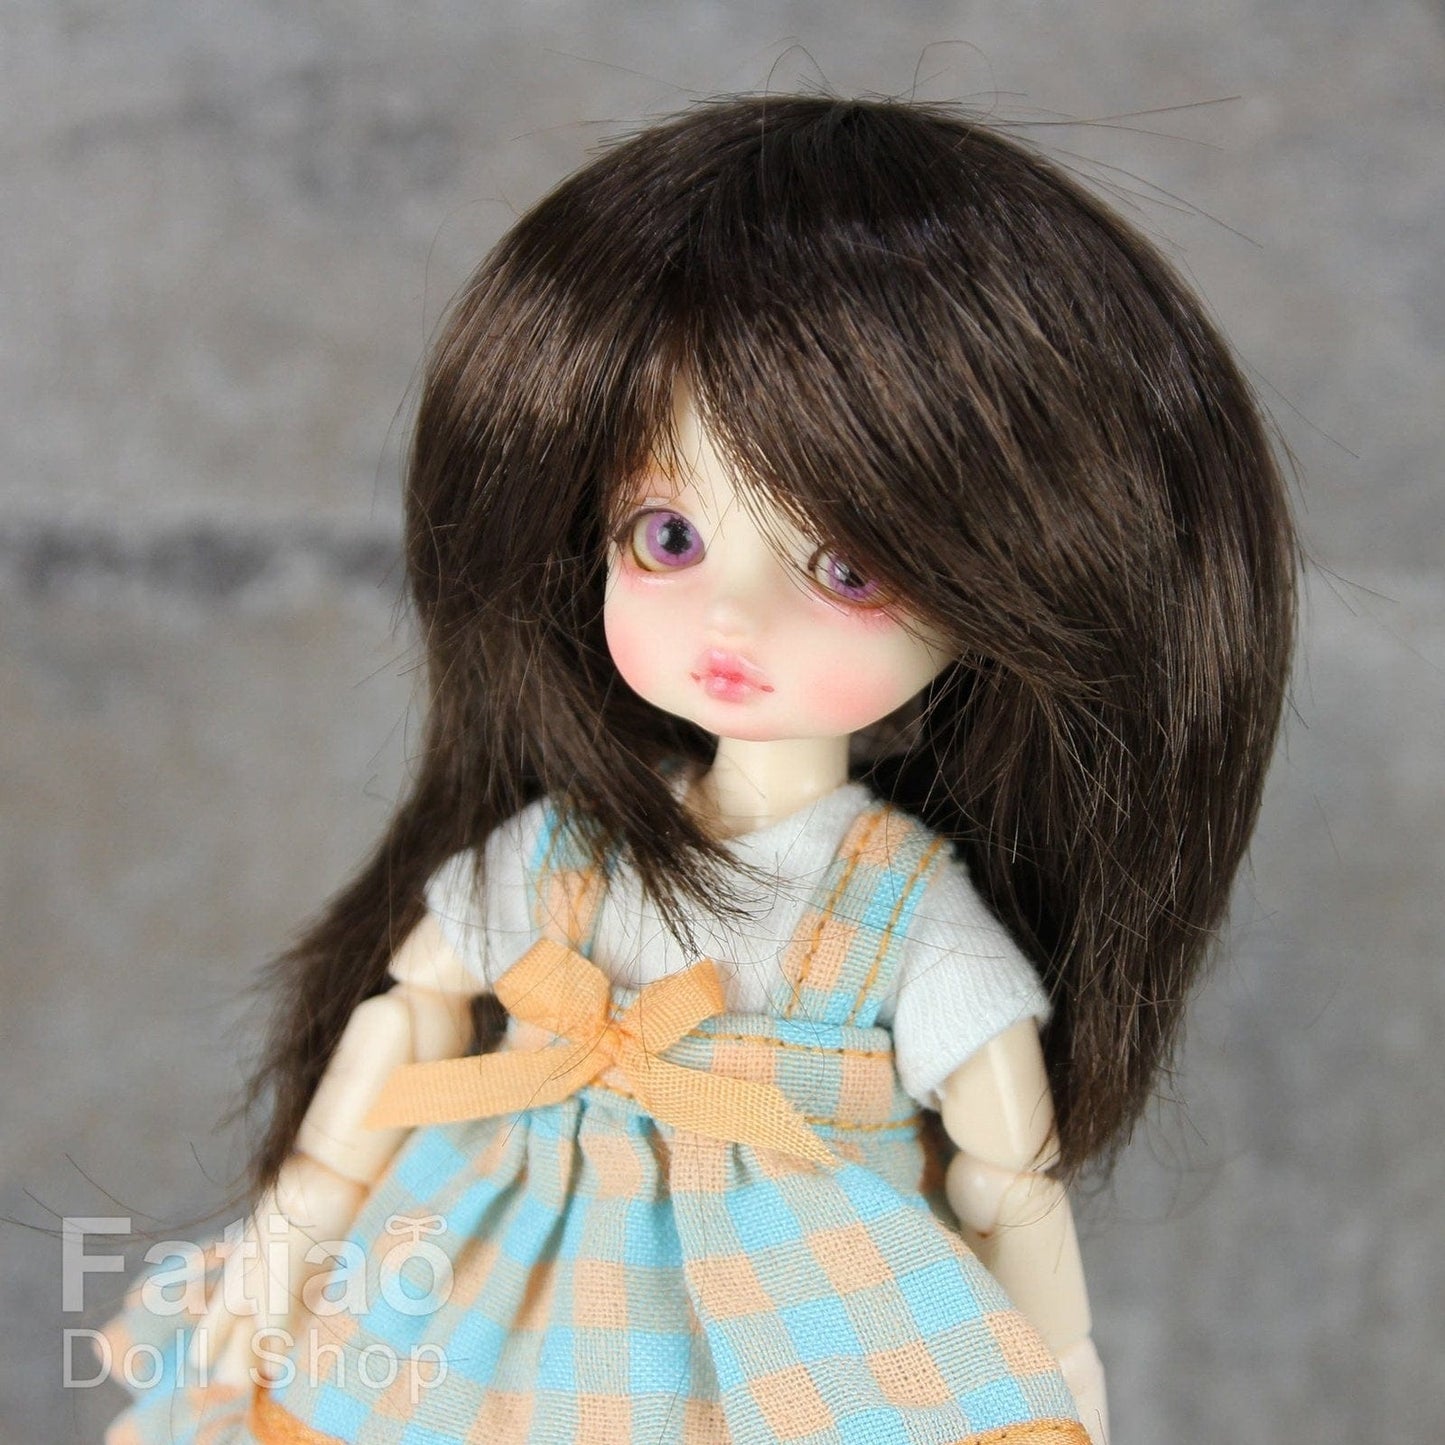 【Fatiao Doll Shop】FWF-046 娃用假髮 多色 / 3-4吋 BJD 12分 pukipuki